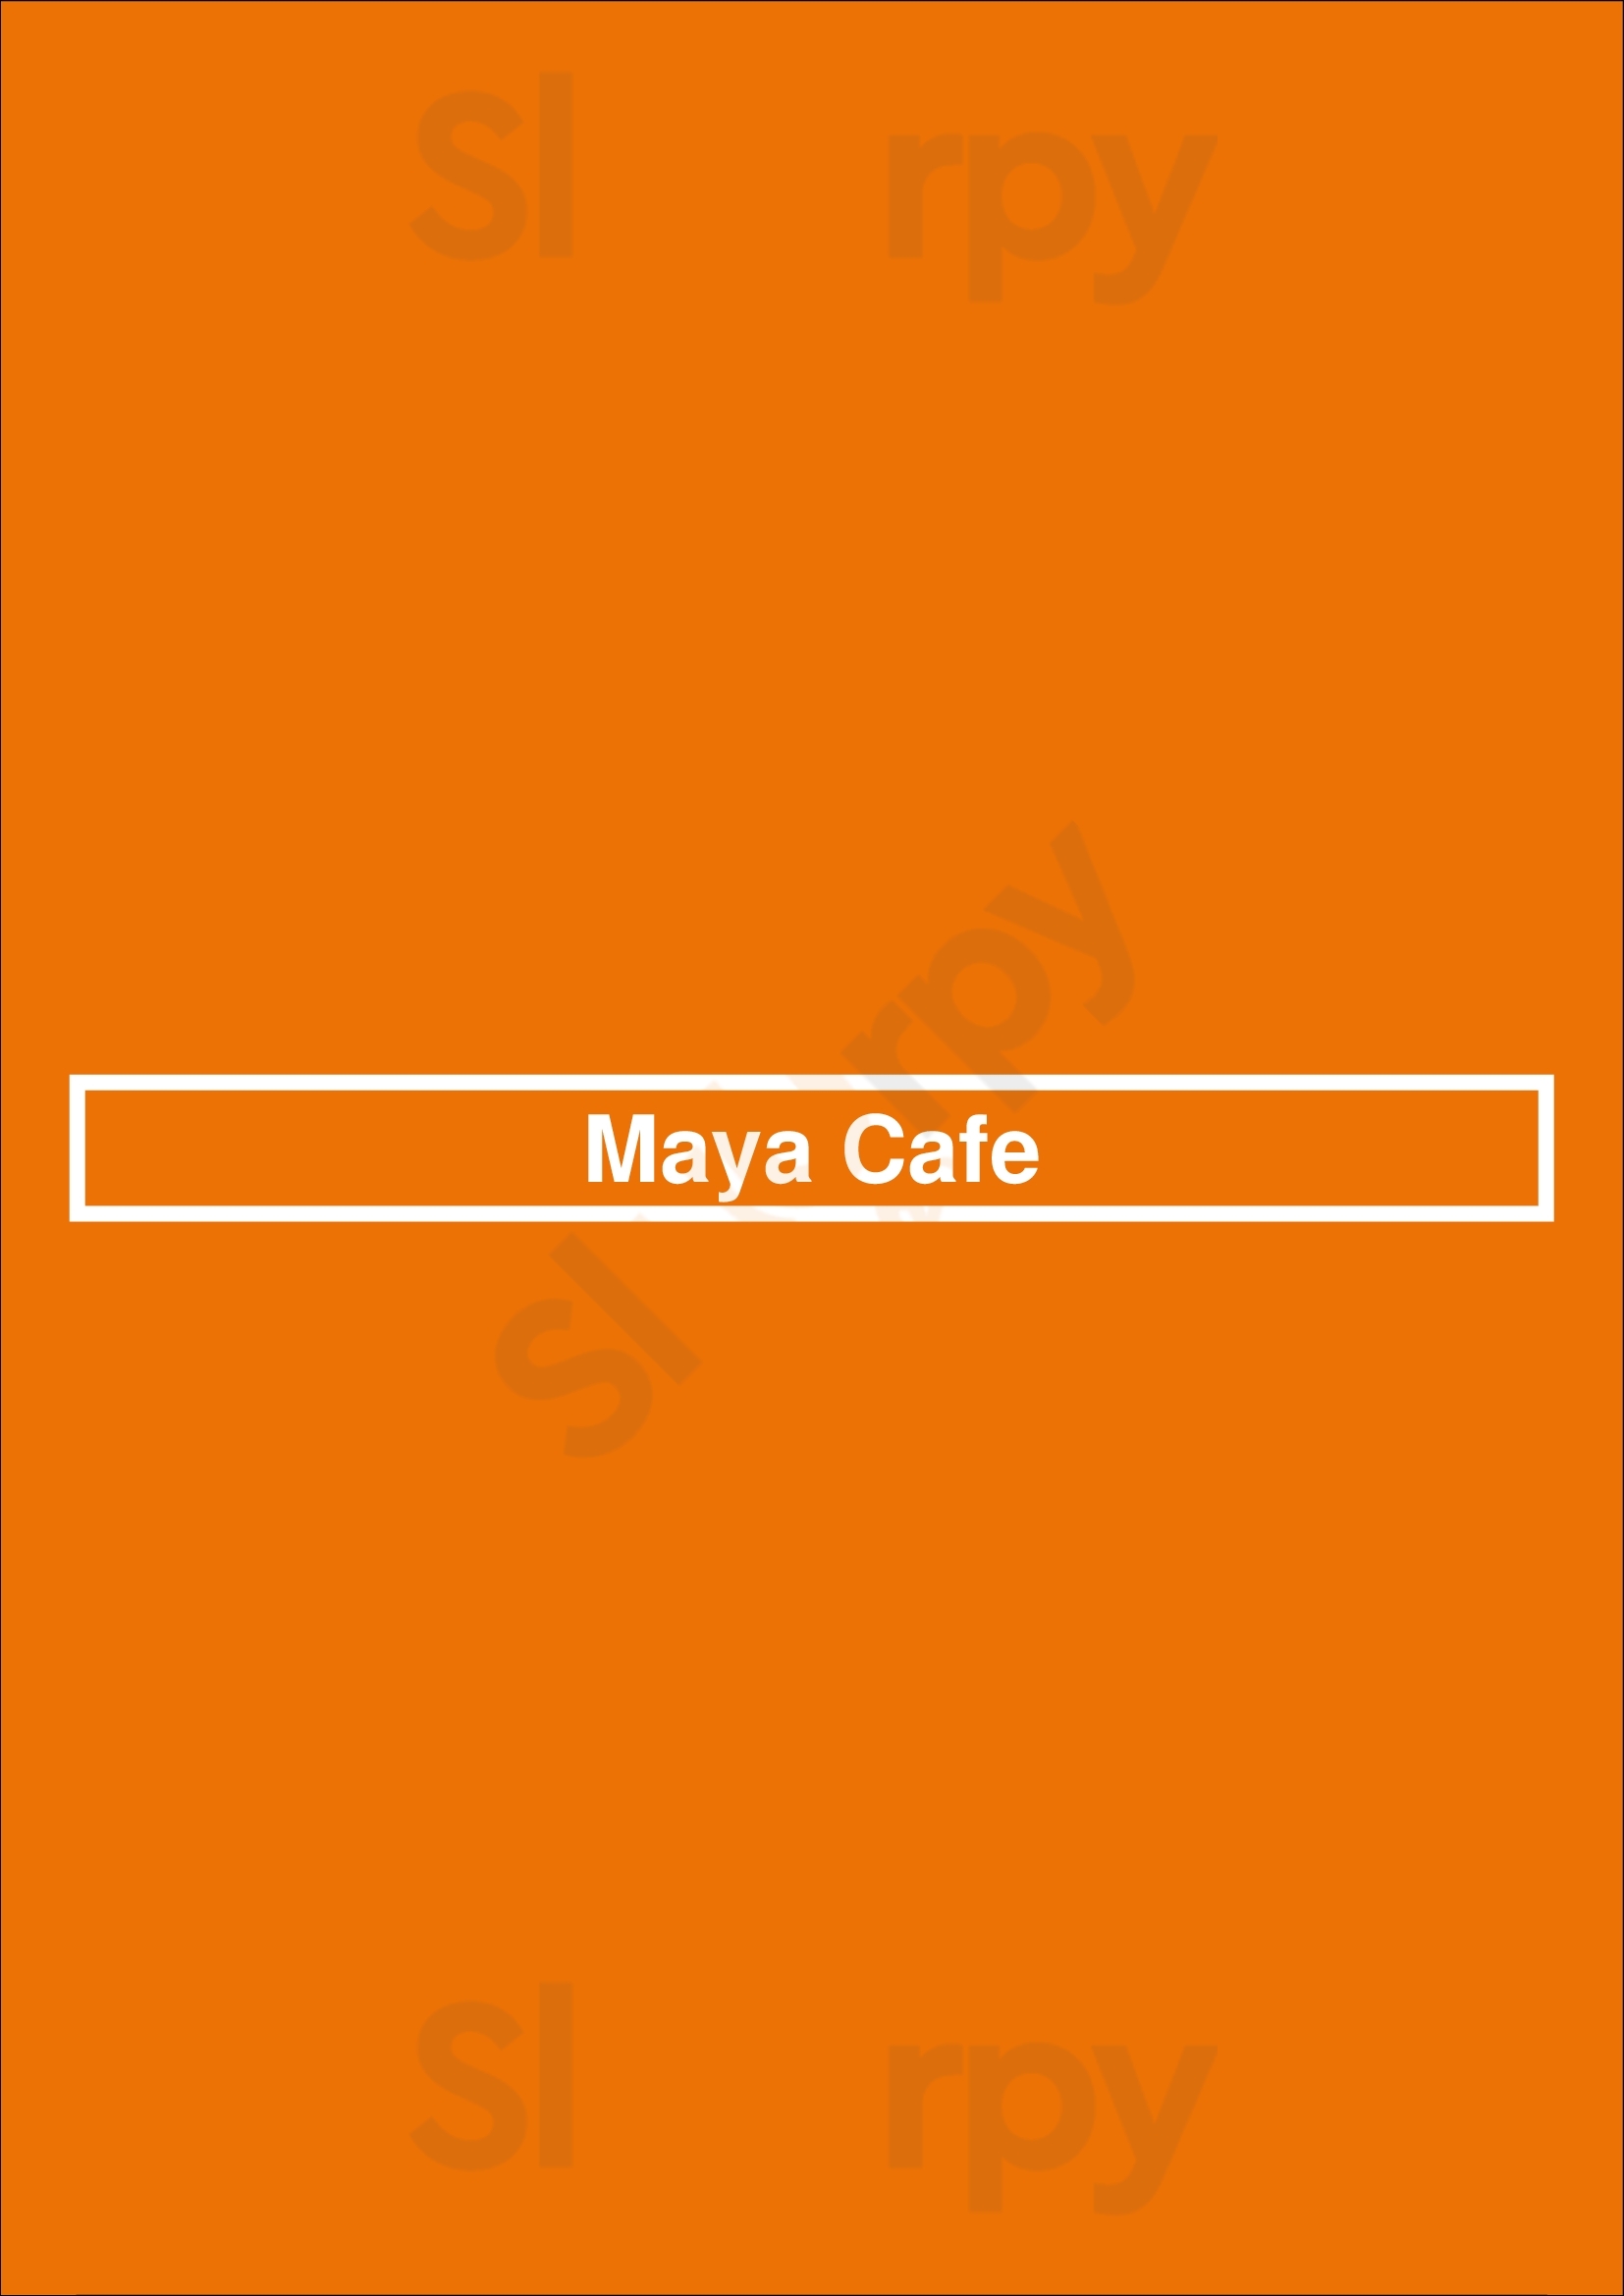 Maya's Cafe San Jose Menu - 1